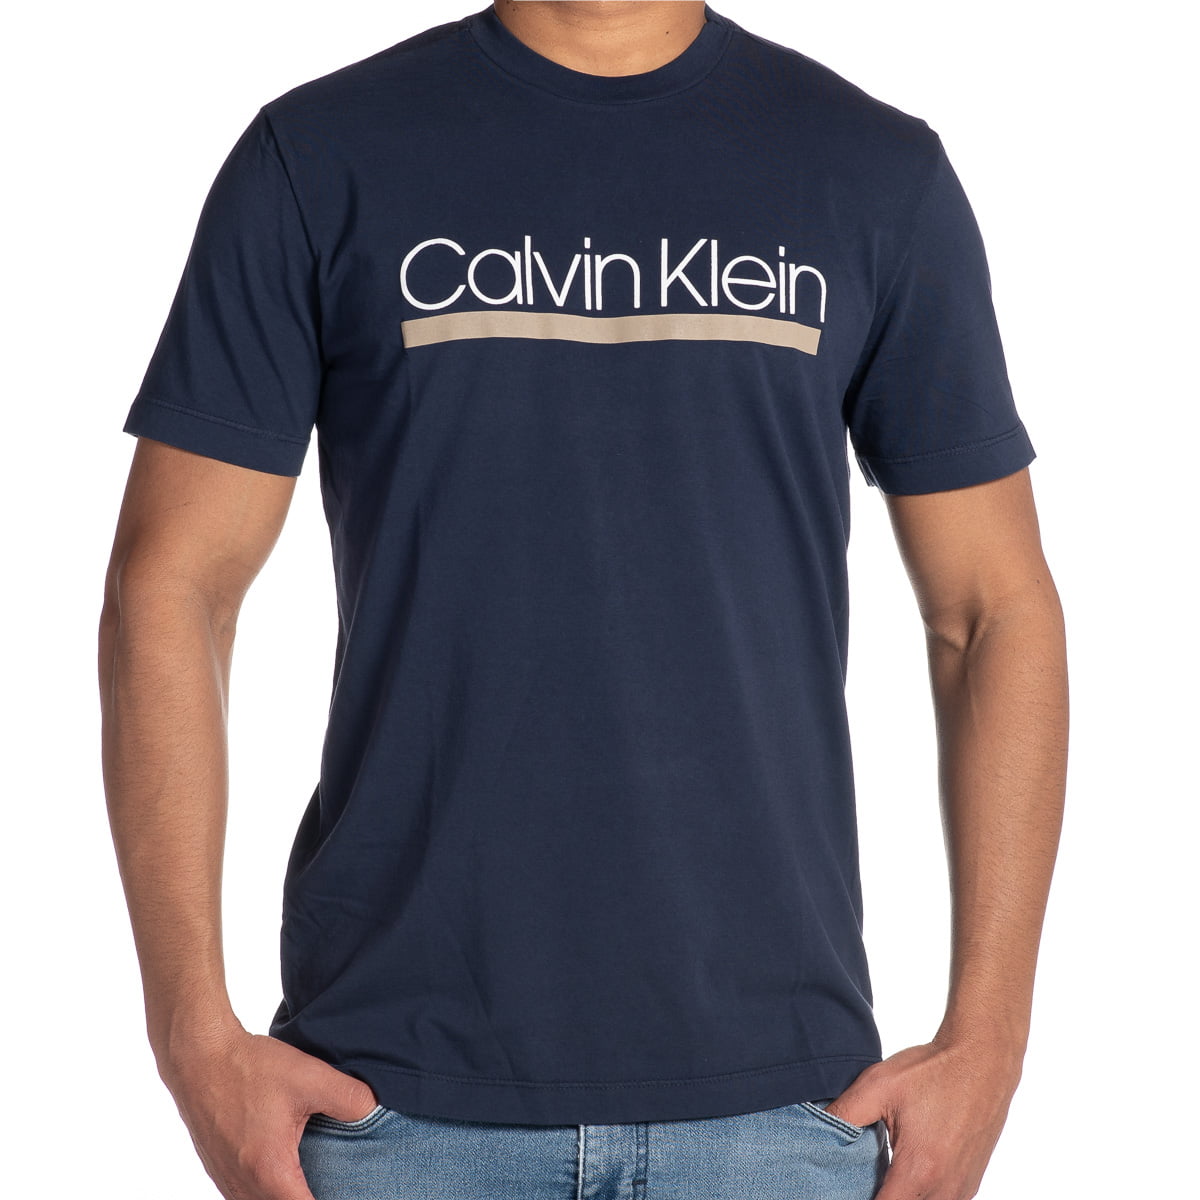 Camiseta Calvin Klein masculina azul marinho